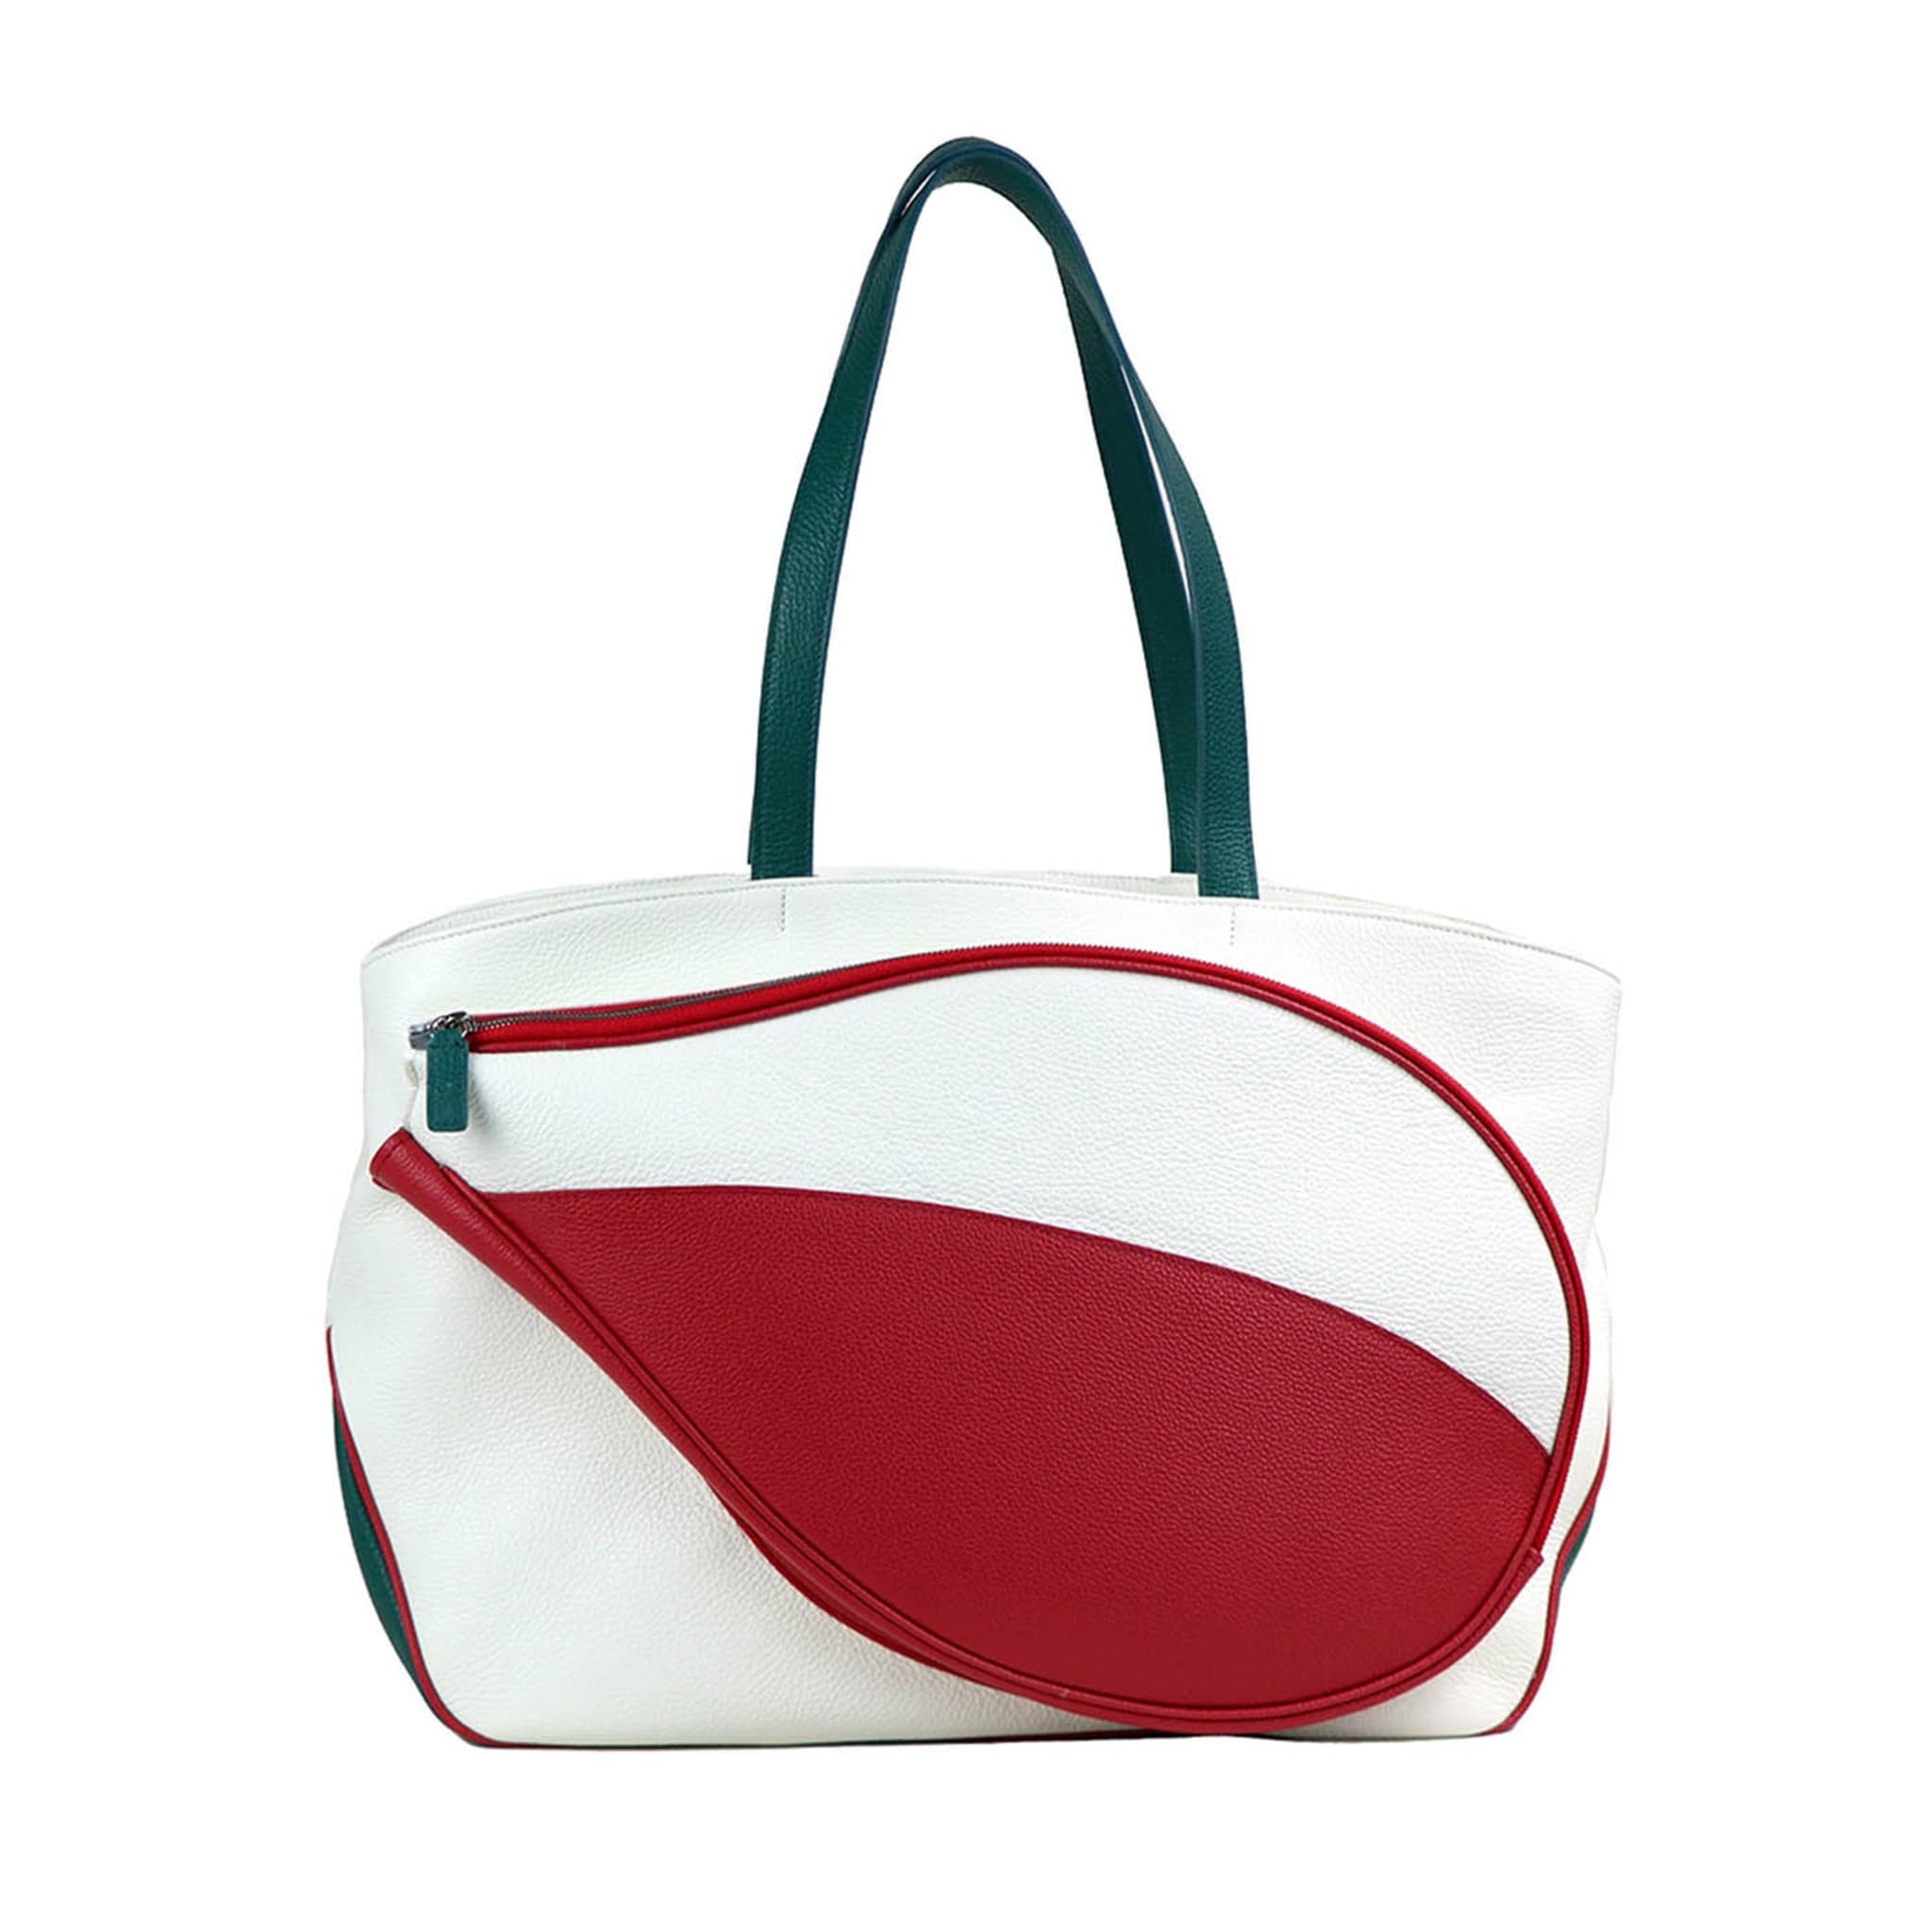 Sporttasche in Weiß und Rot mit Tasche in Form eines Tennisschlägers - Hauptansicht